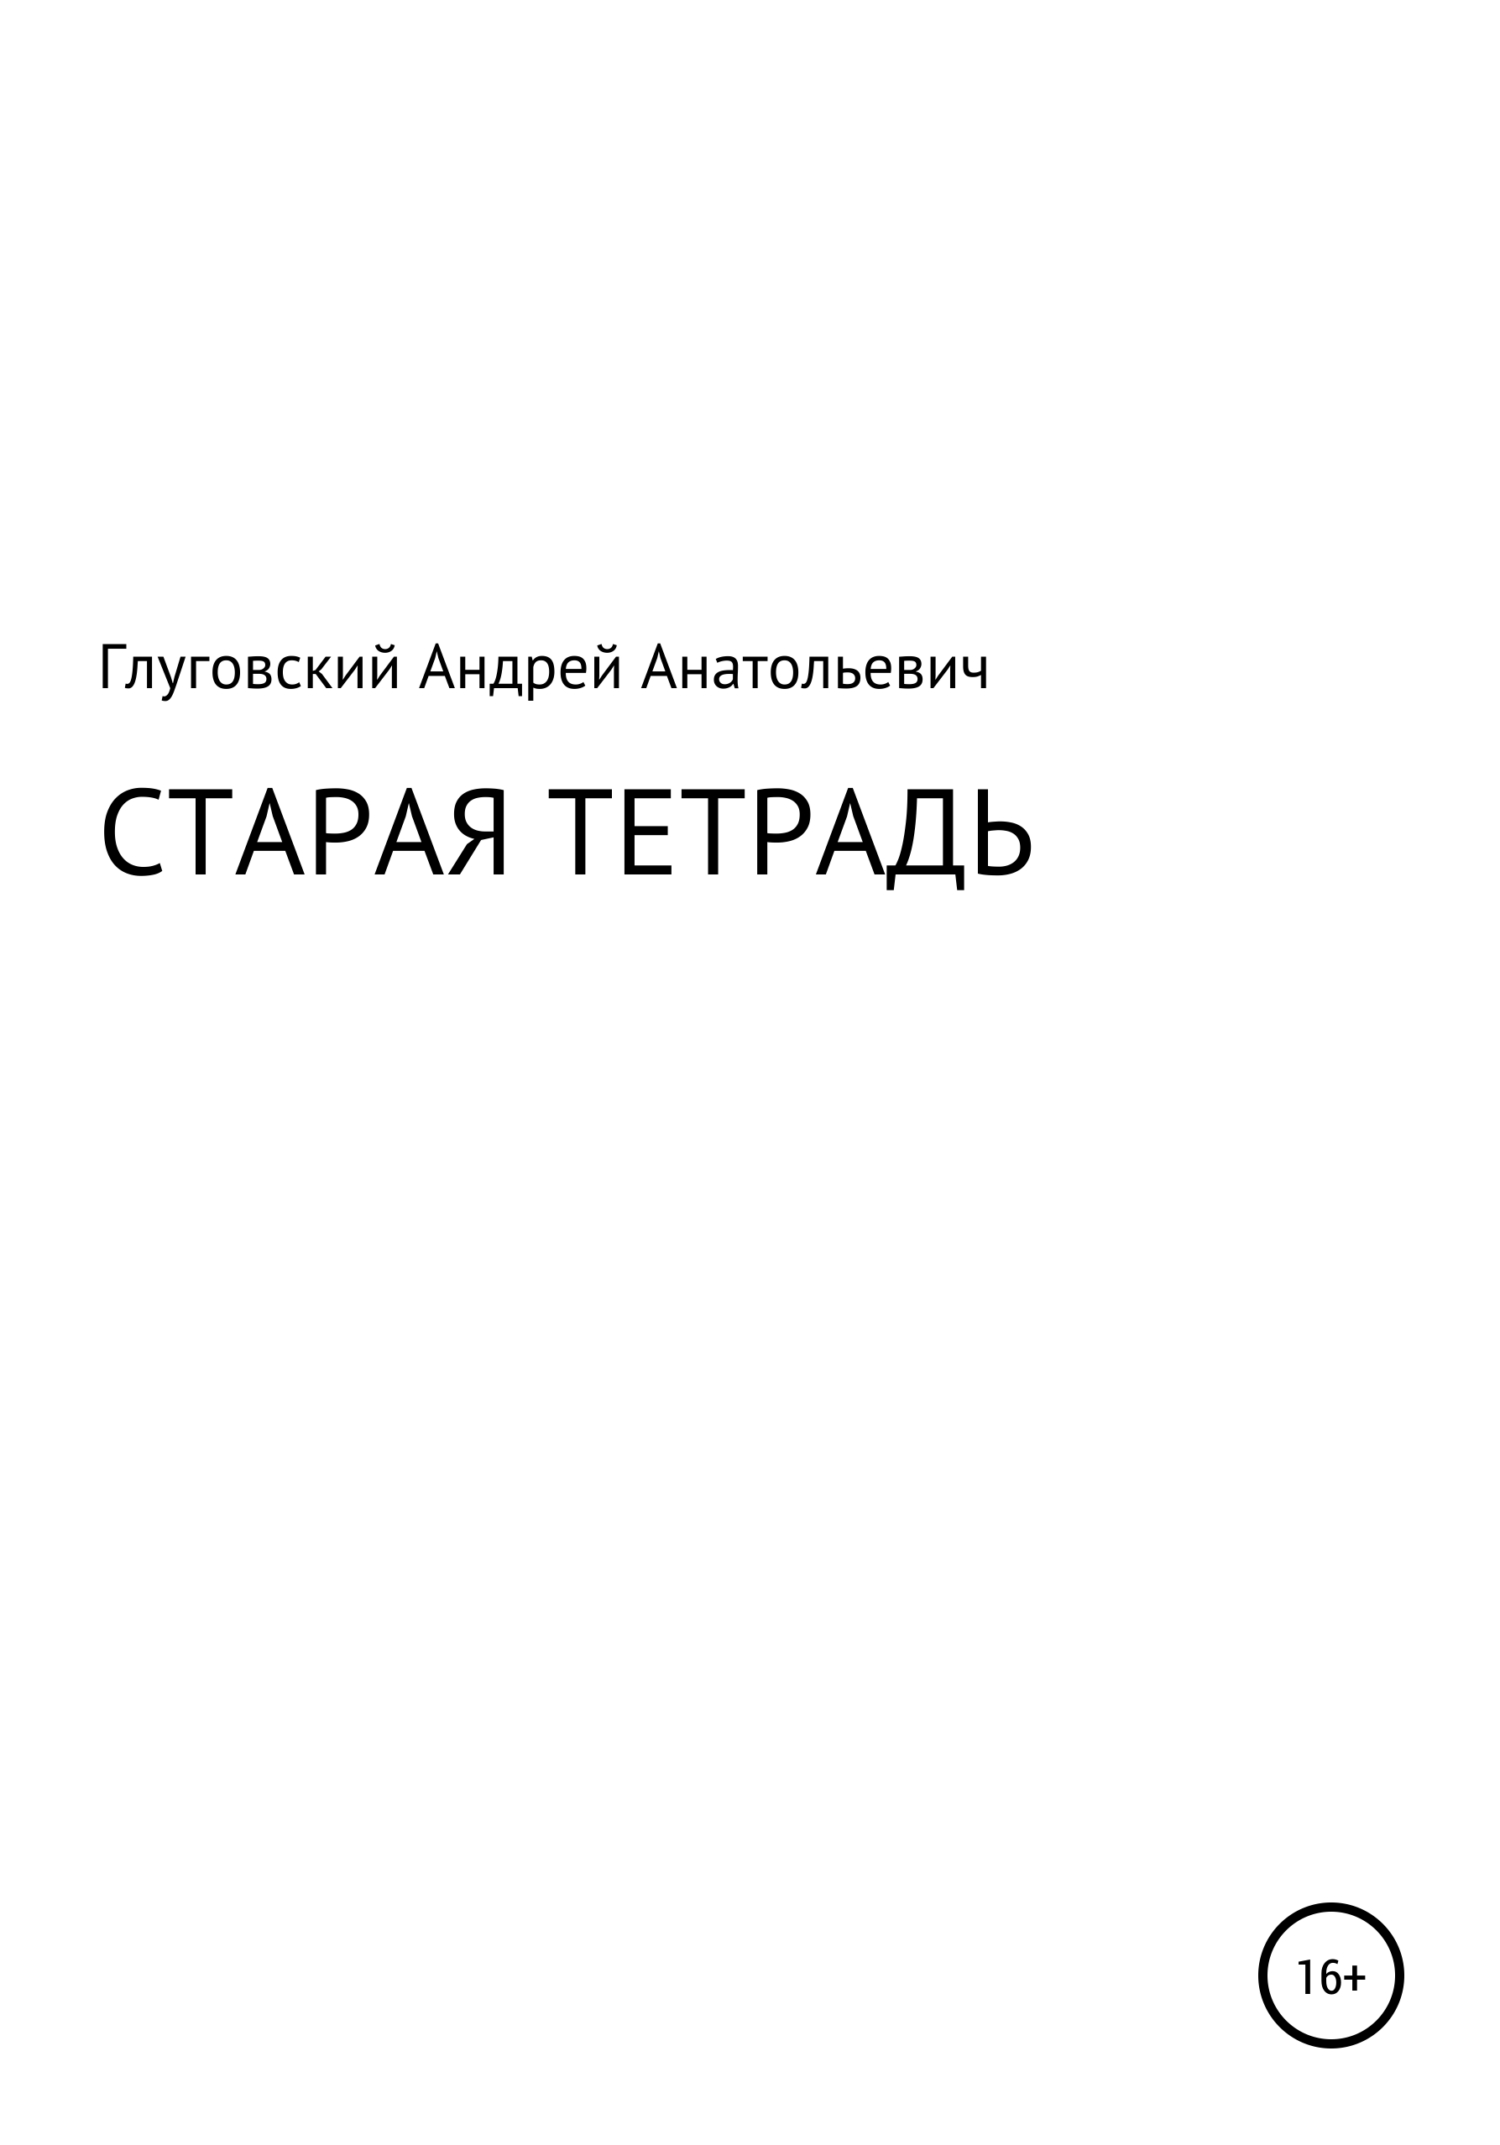 Старая тетрадь - Андрей Анатольевич Глуговский